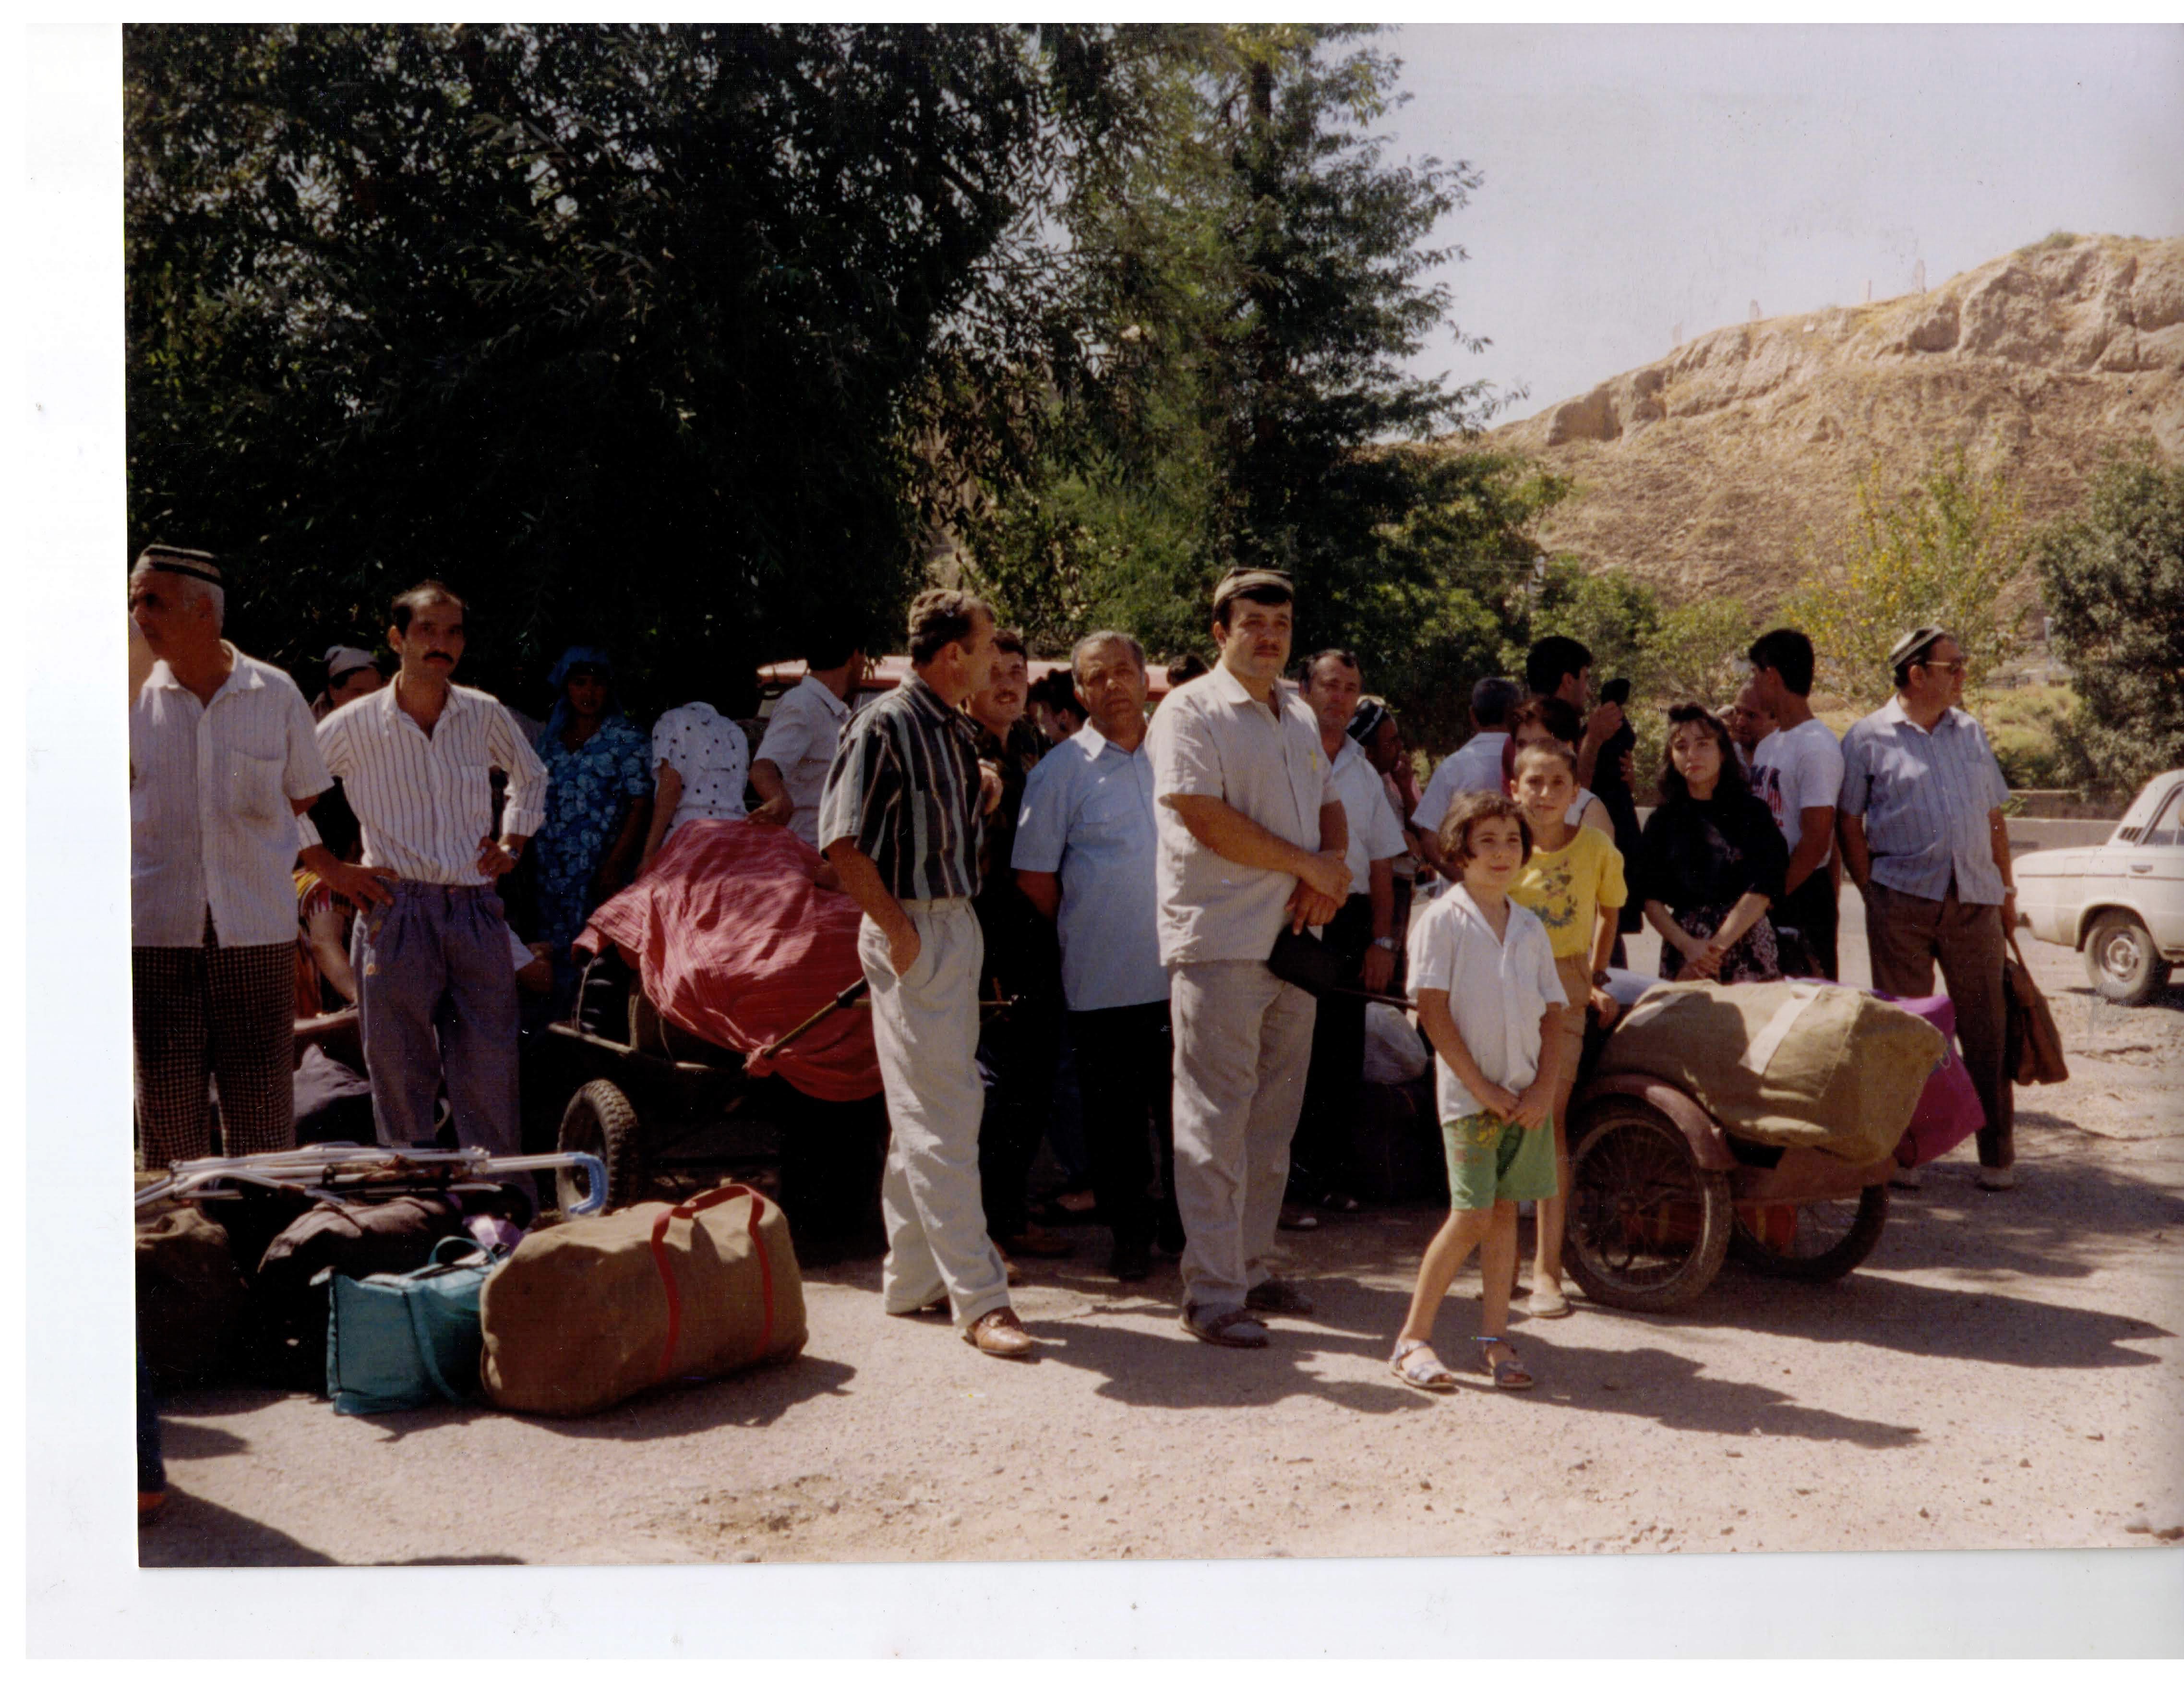 photograph of people assembled together, leaving Samarkind